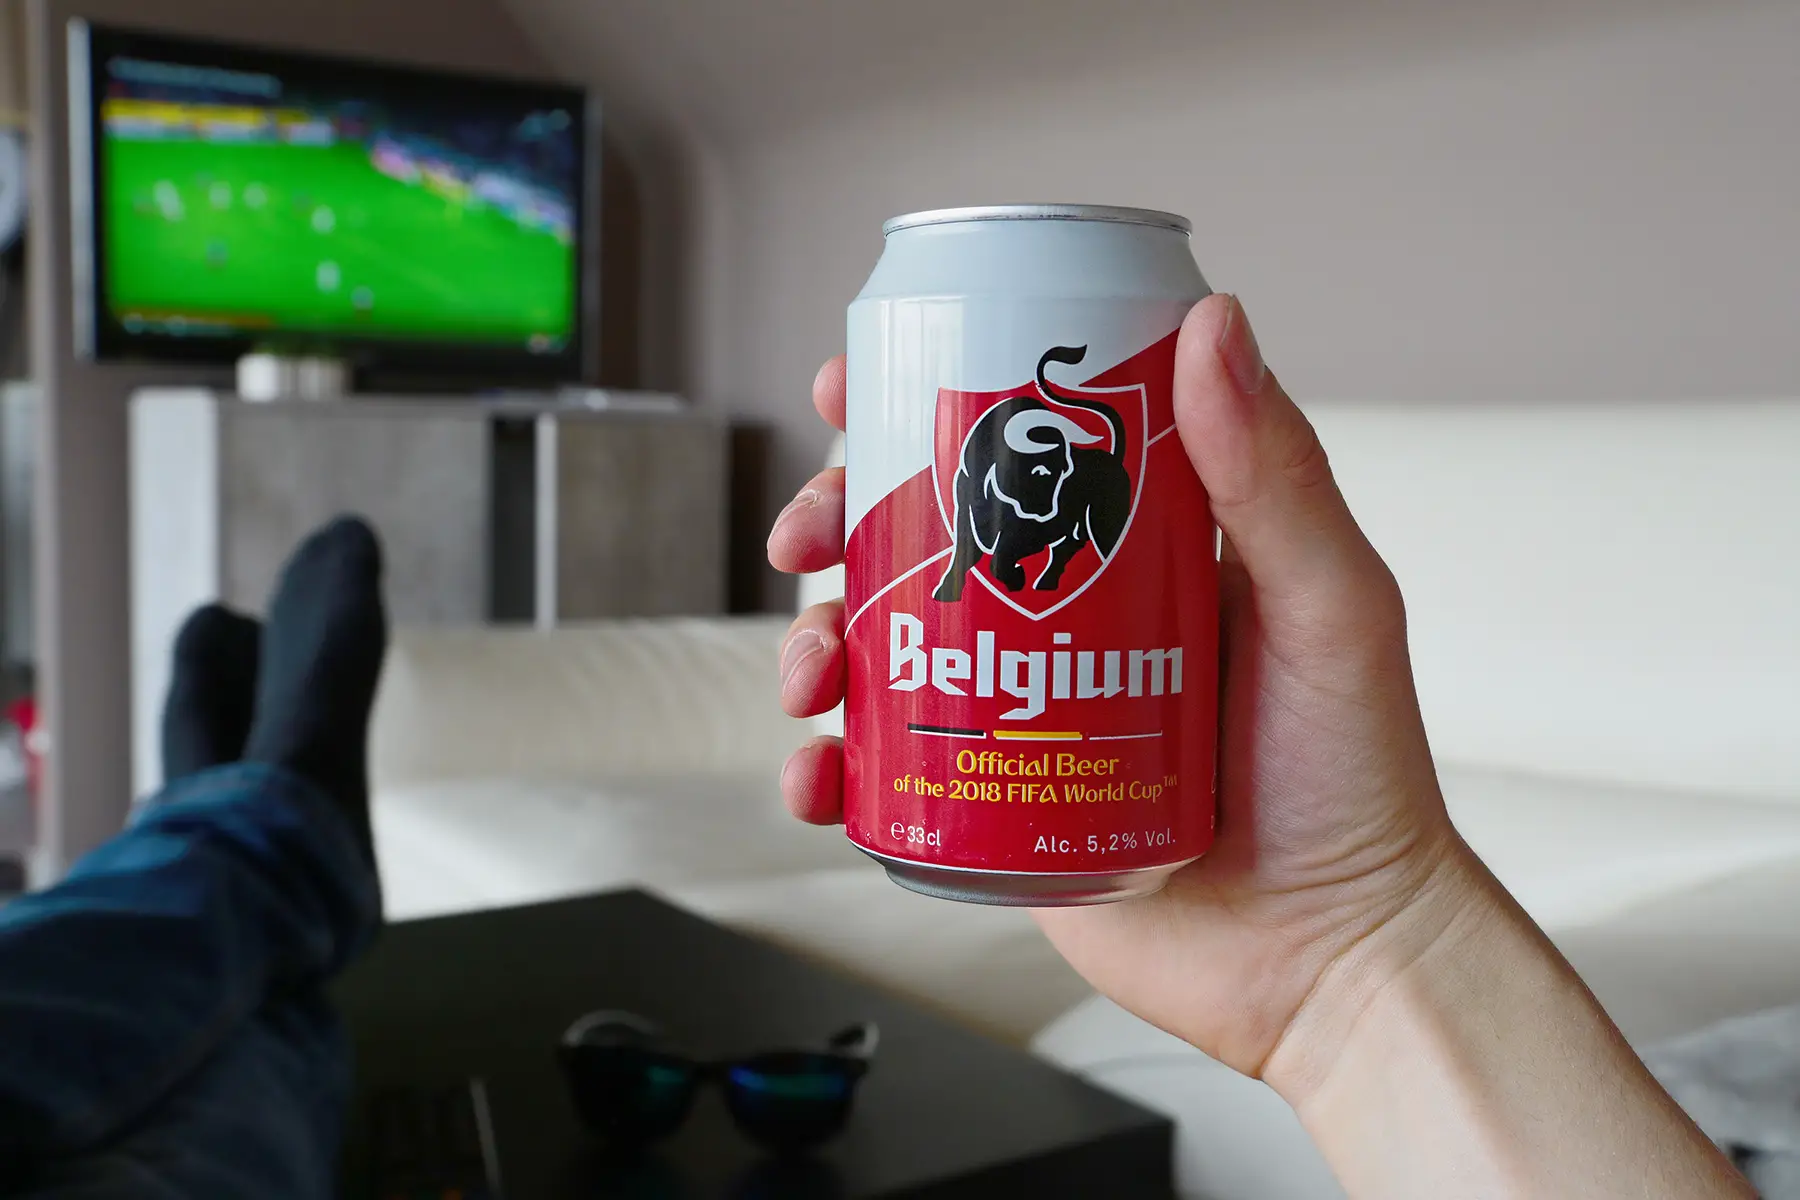 Watching a Belgium football match on TV